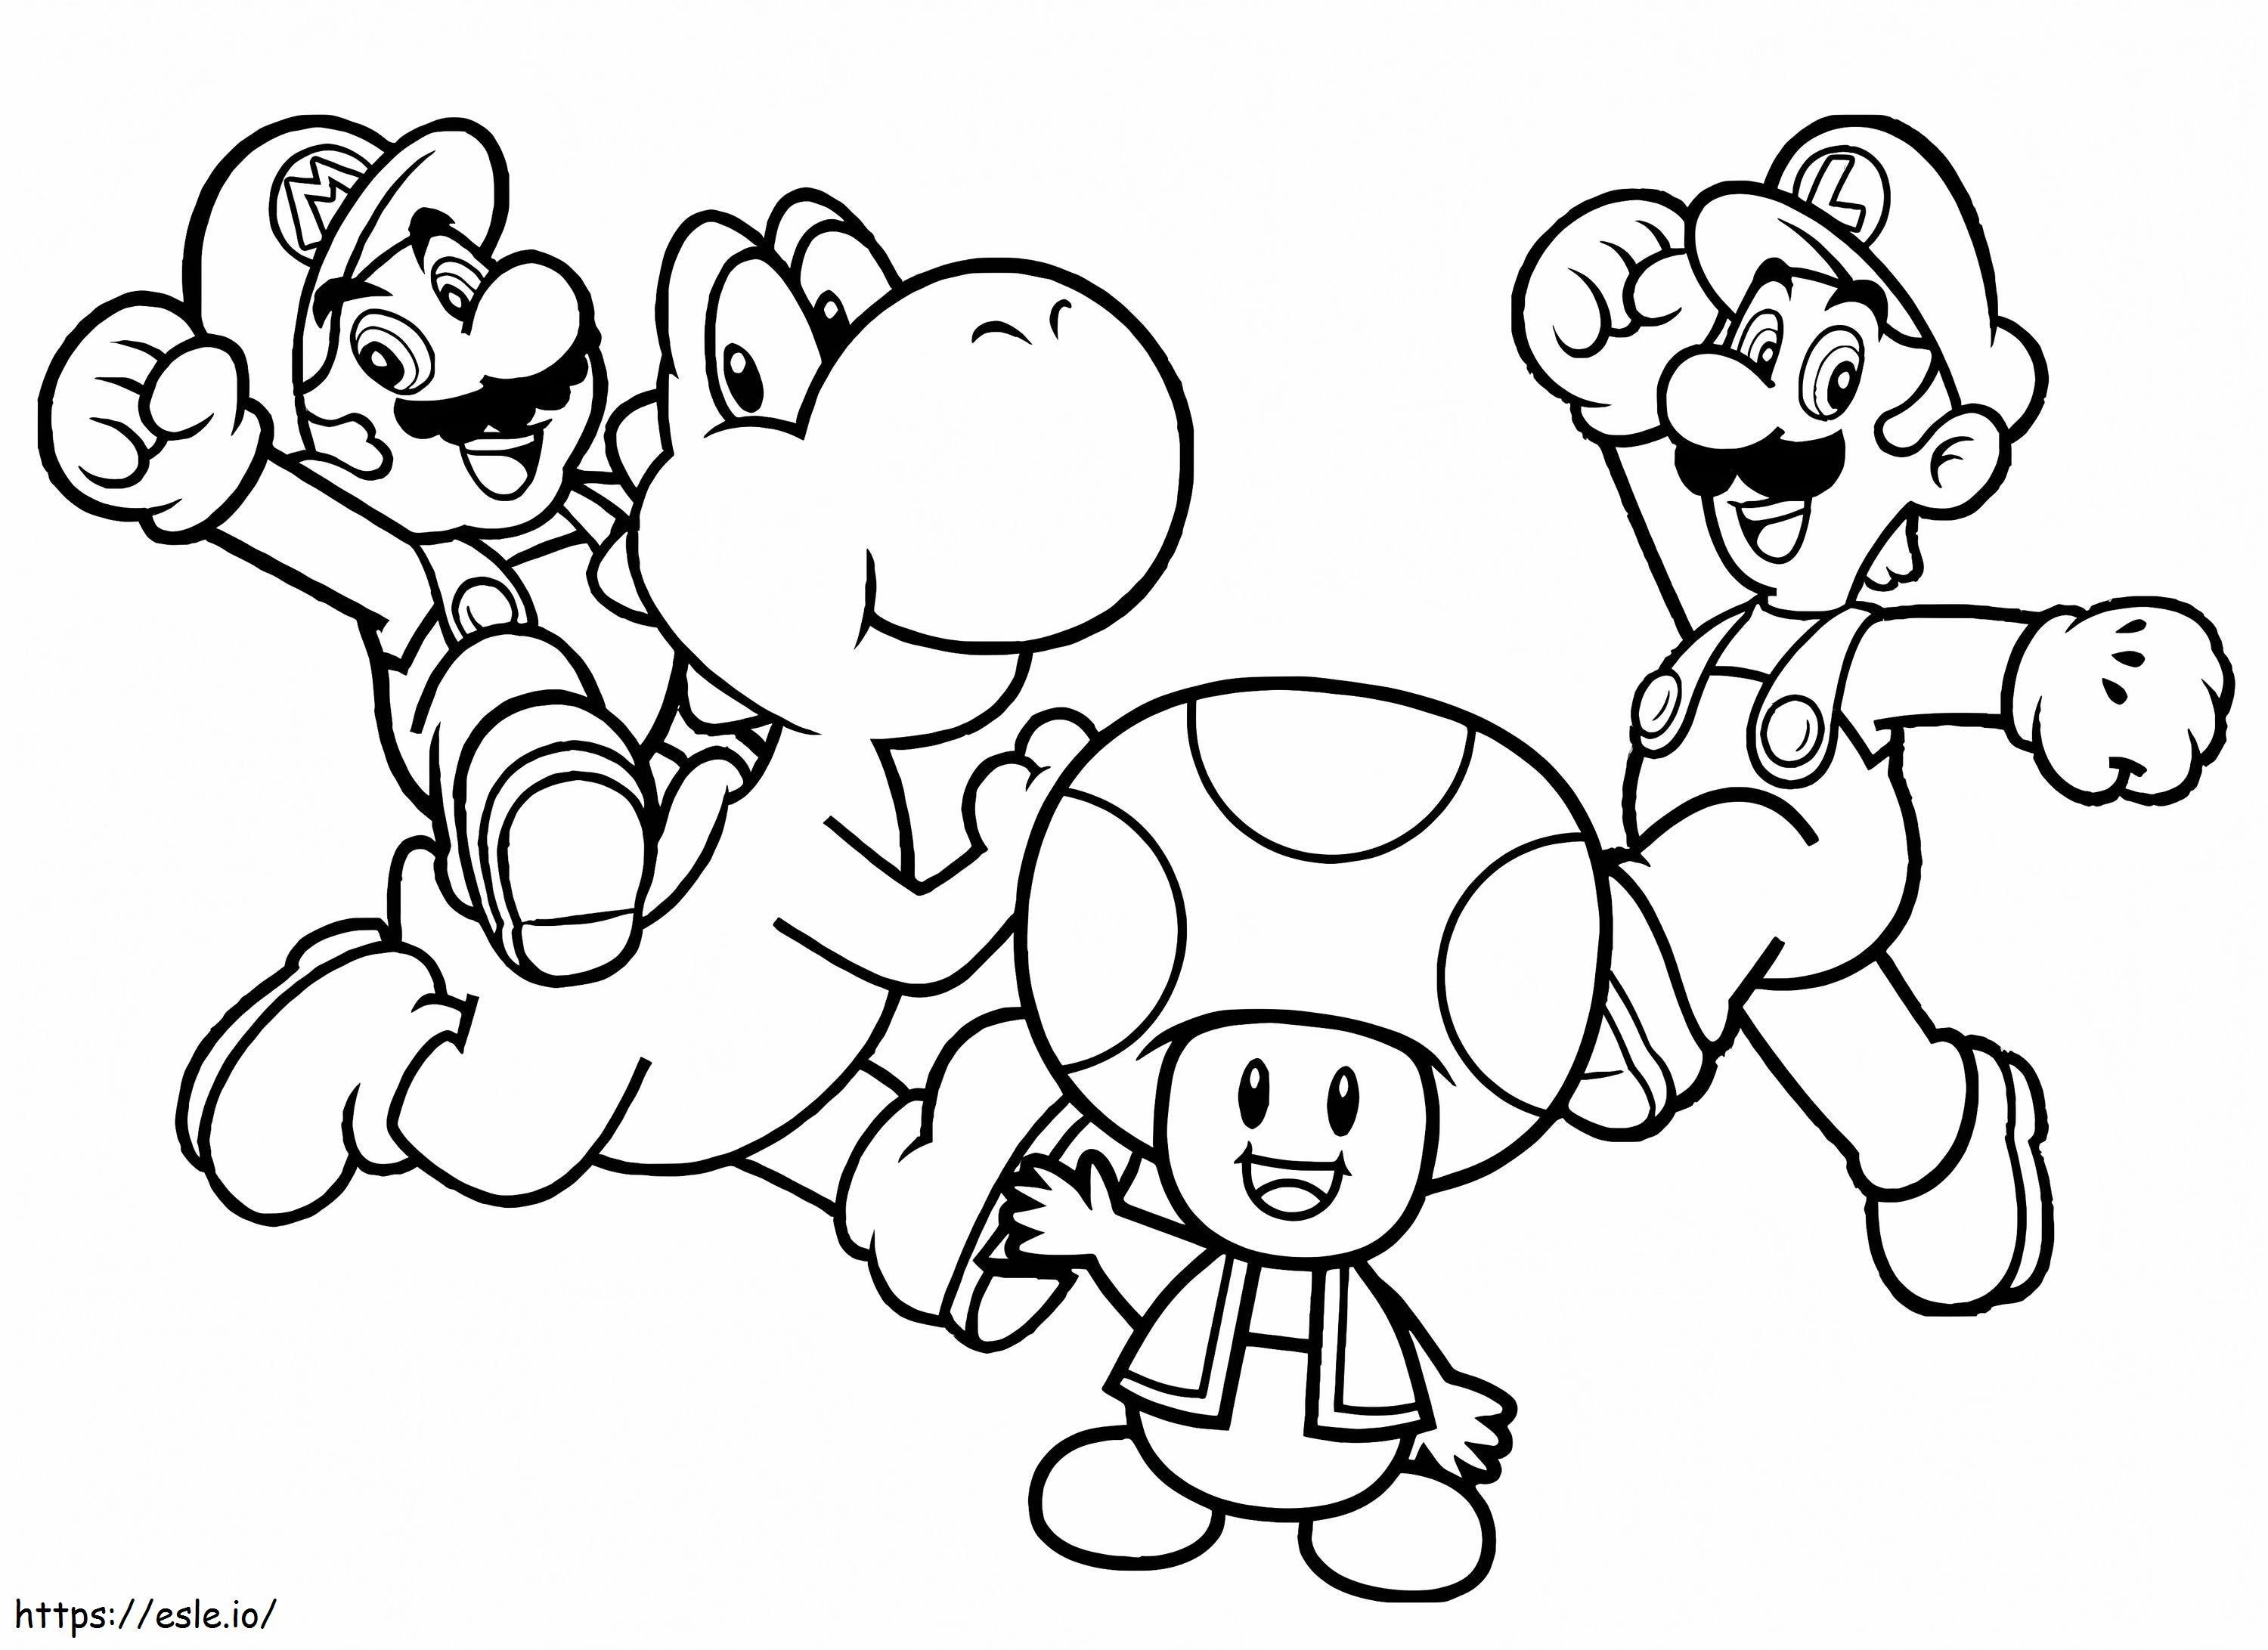 Personaggi di Mario da colorare